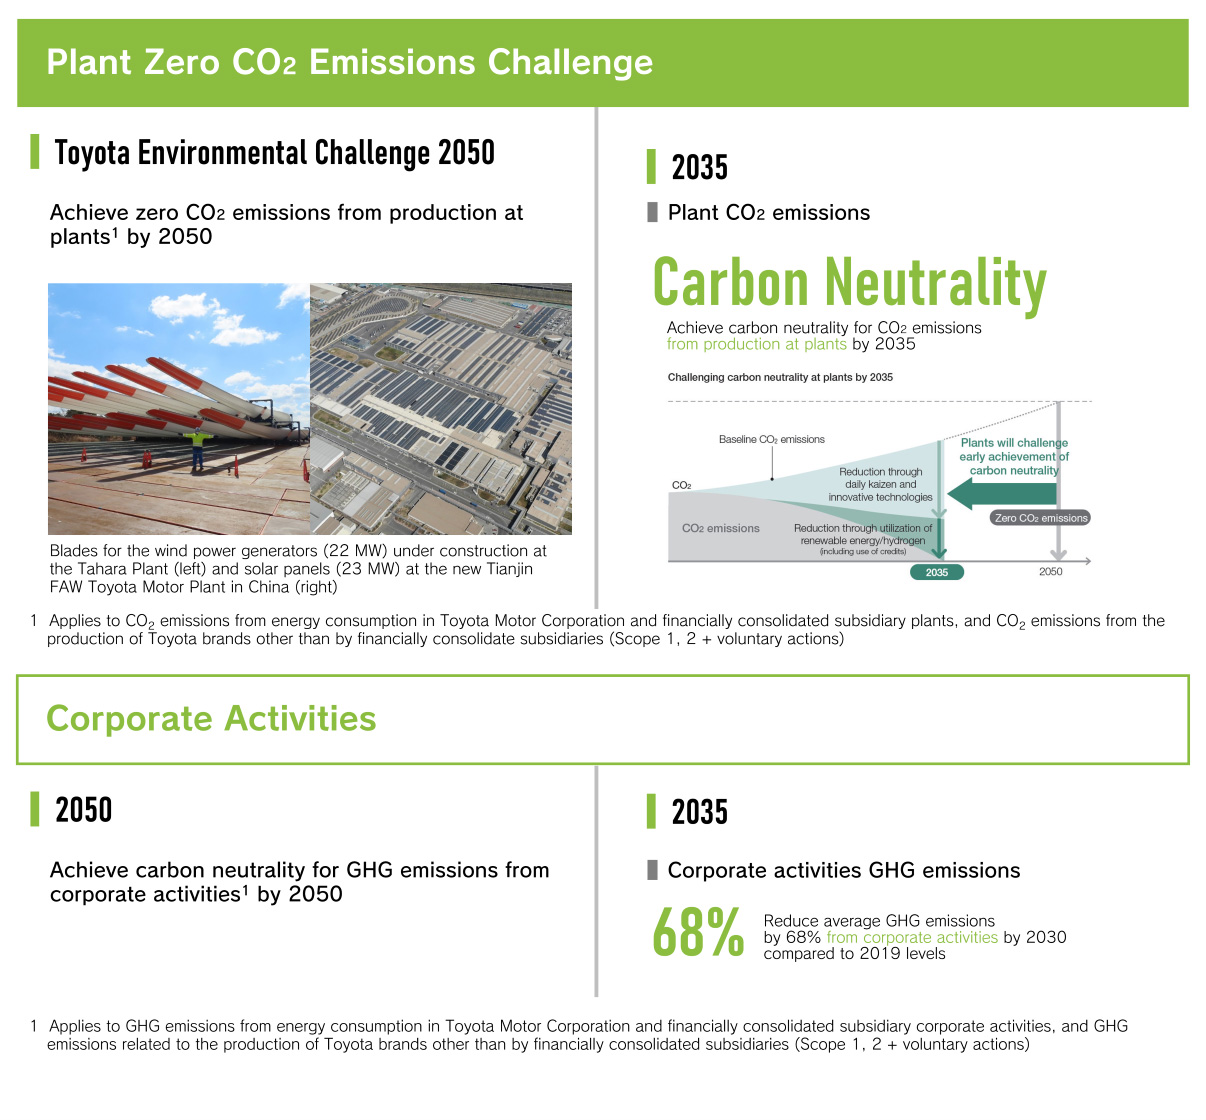 Plant Zero CO2 Emissions Challenge